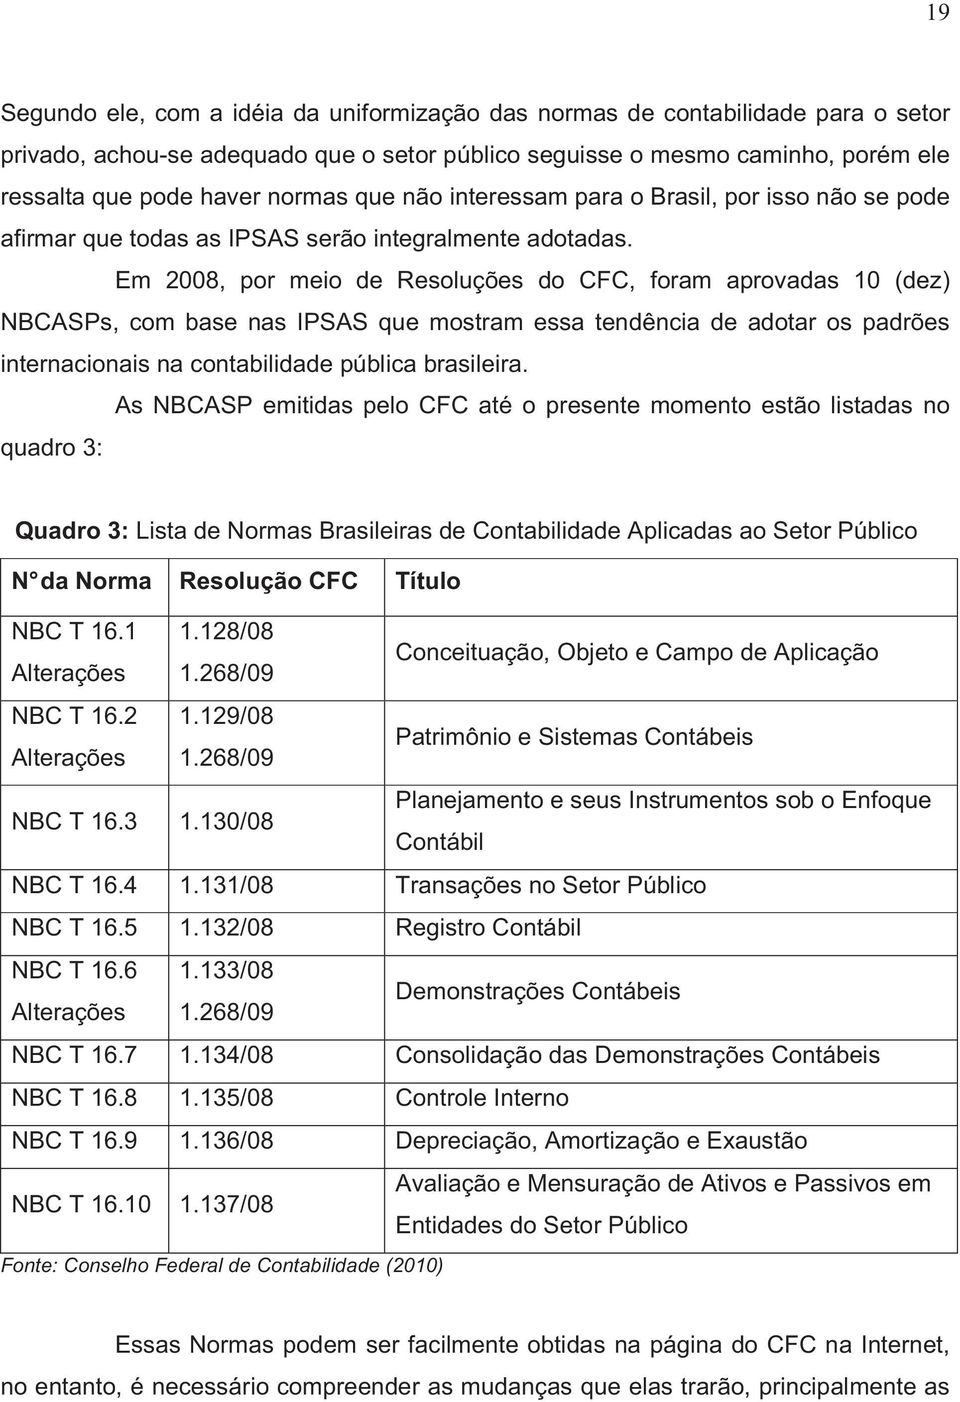 Em 2008, por meio de Resoluções do CFC, foram aprovadas 10 (dez) NBCASPs, com base nas IPSAS que mostram essa tendência de adotar os padrões internacionais na contabilidade pública brasileira.